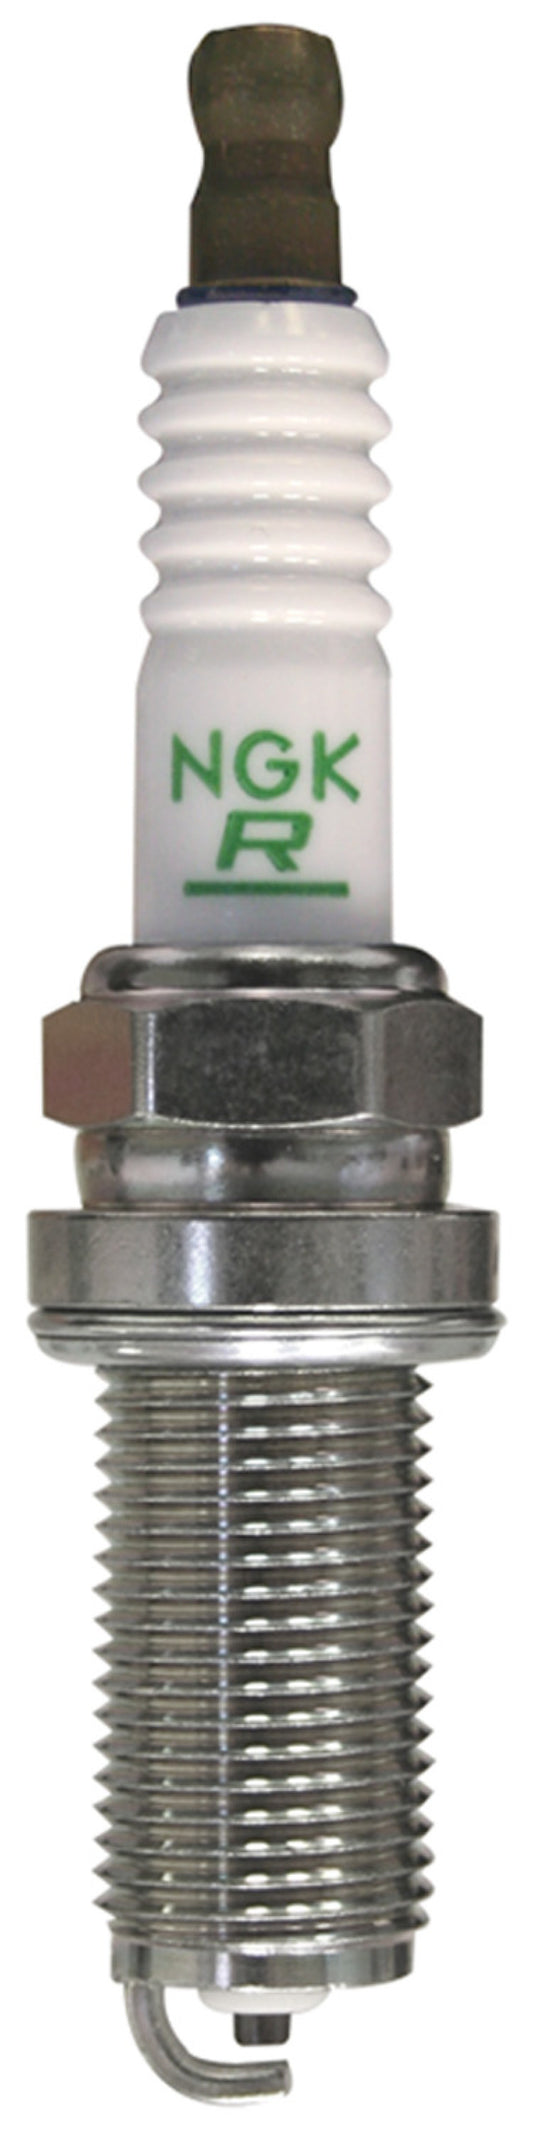 NGK Nickel Spark Plug Box of 4 (LFR6C-11)